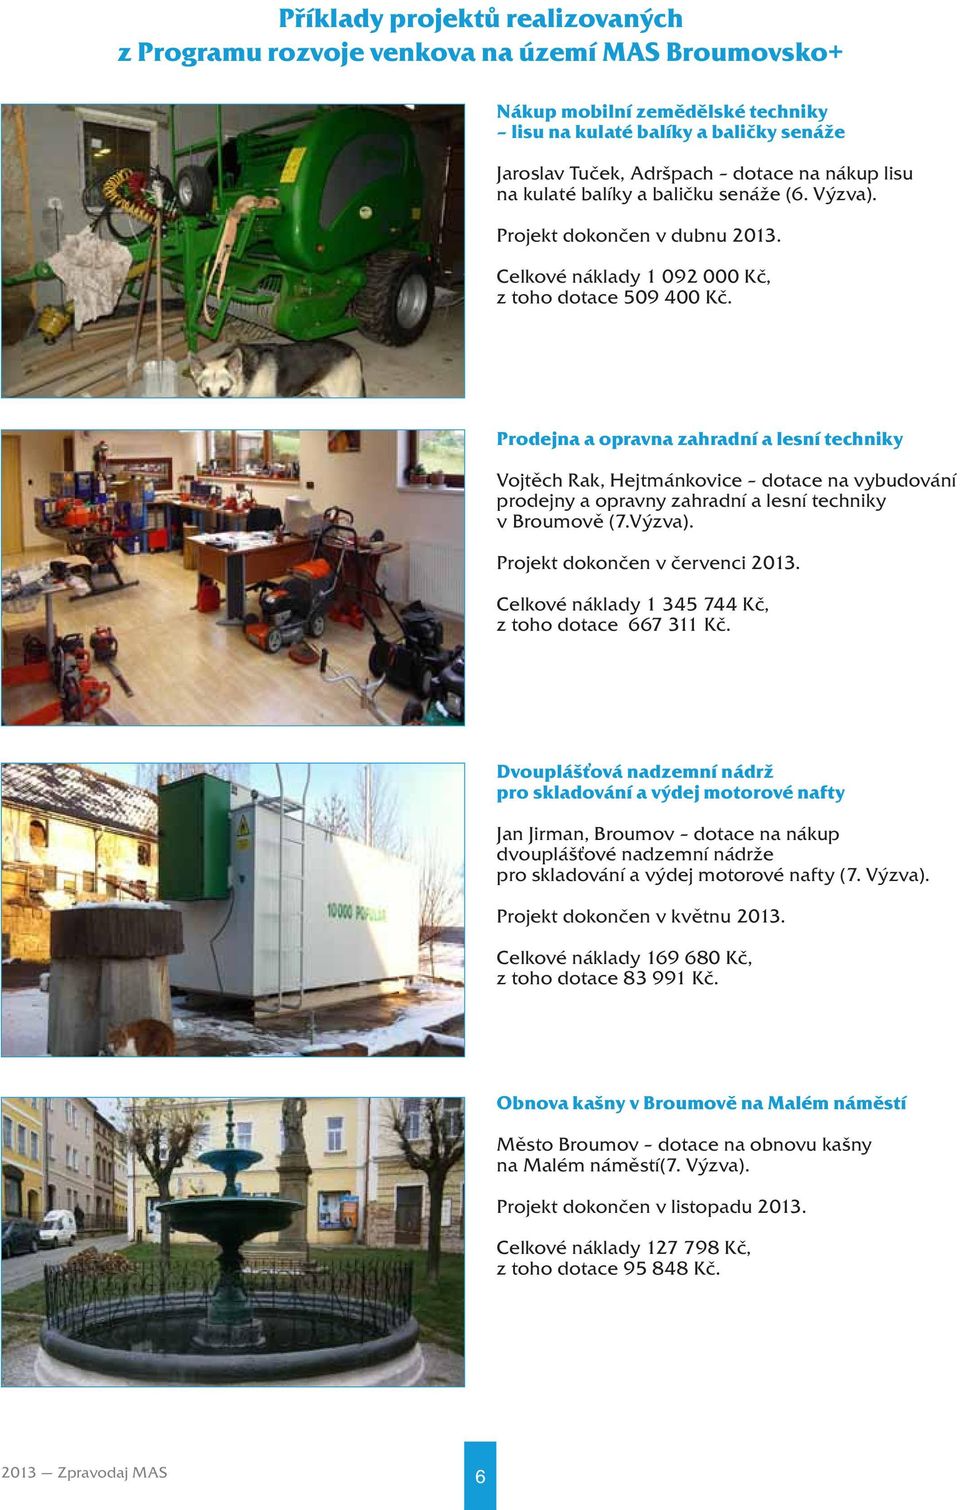 Prodejna a opravna zahradní a lesní techniky Vojtěch Rak, Hejtmánkovice dotace na vybudování prodejny a opravny zahradní a lesní techniky v Broumově (7.Výzva). Projekt dokončen v červenci 2013.